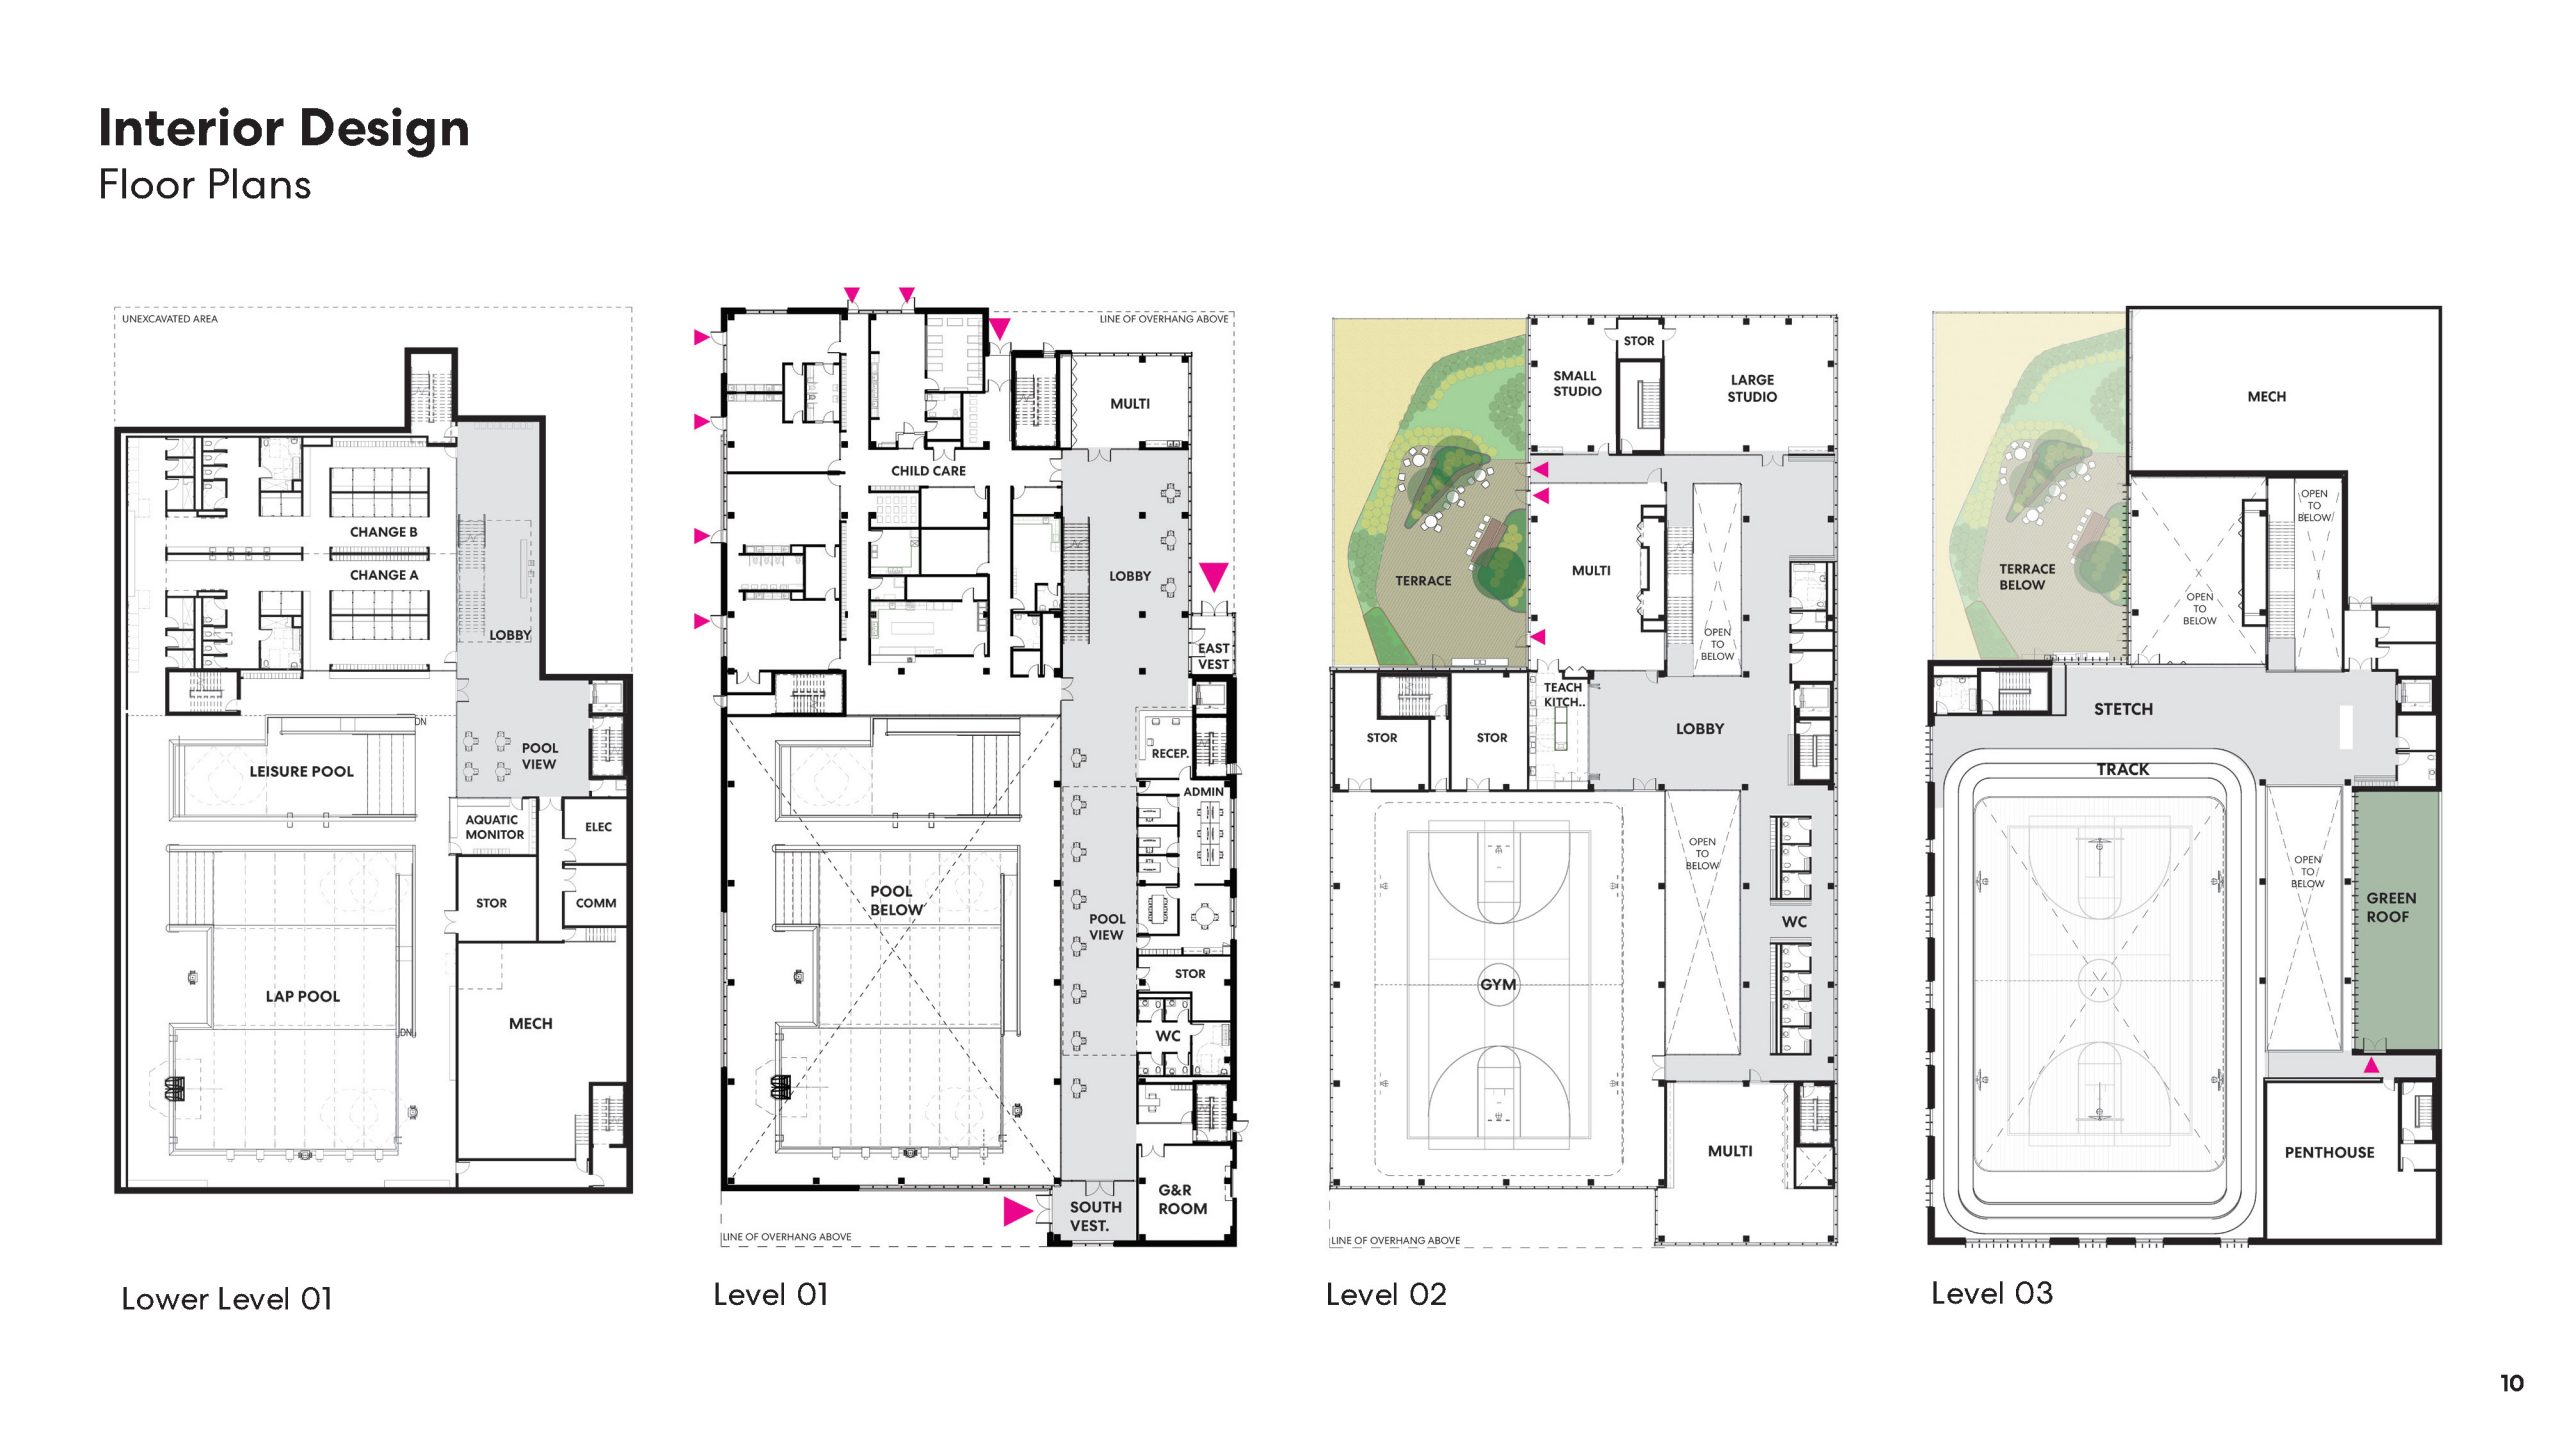 Interior design floor plans